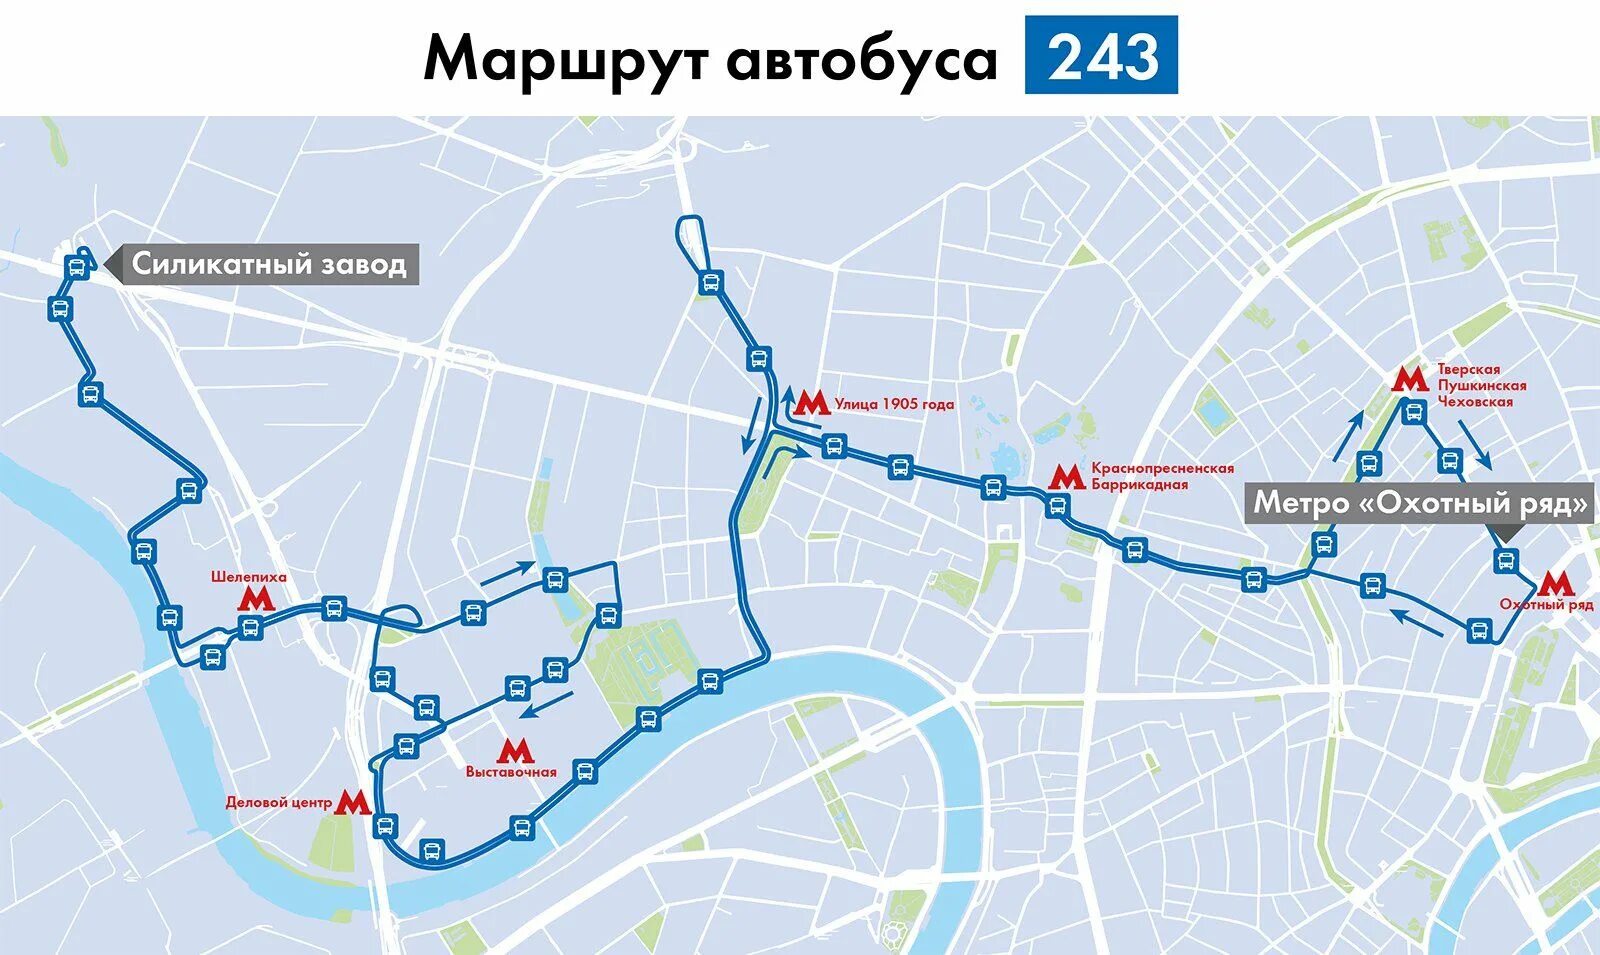 Остановки автобуса м3. Маршрут автобуса. Карта маршрута автобуса. Маршрут маршрутки. Автобус Москва.